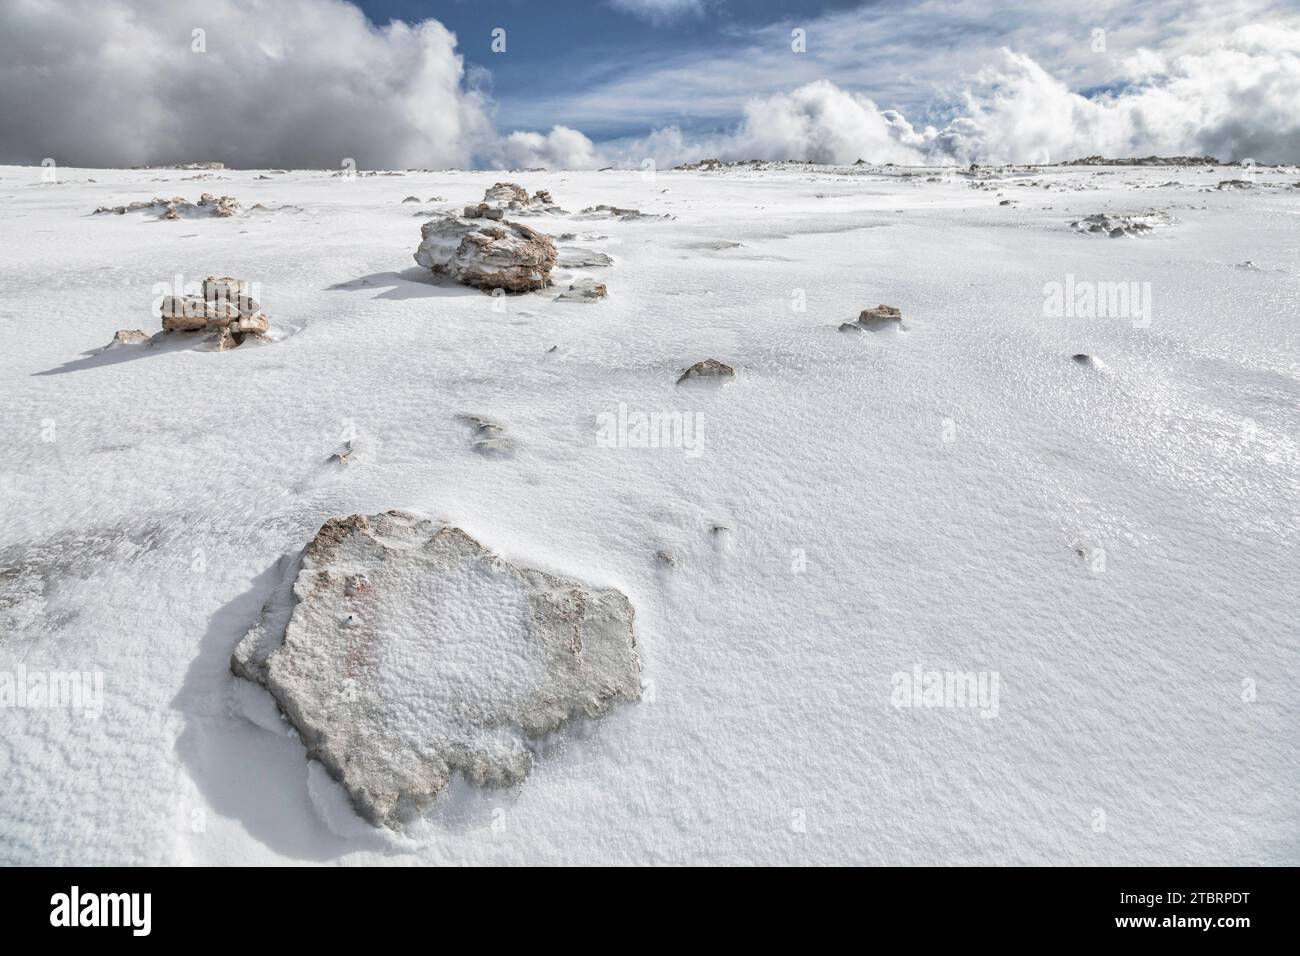 Italie, Trentin, district de trente, municipalité de Canazei, groupe montagneux de Sella, plateau sommital de Sass Pordoi couvert par la neige gelée, paysage désertique dans les Dolomites Banque D'Images